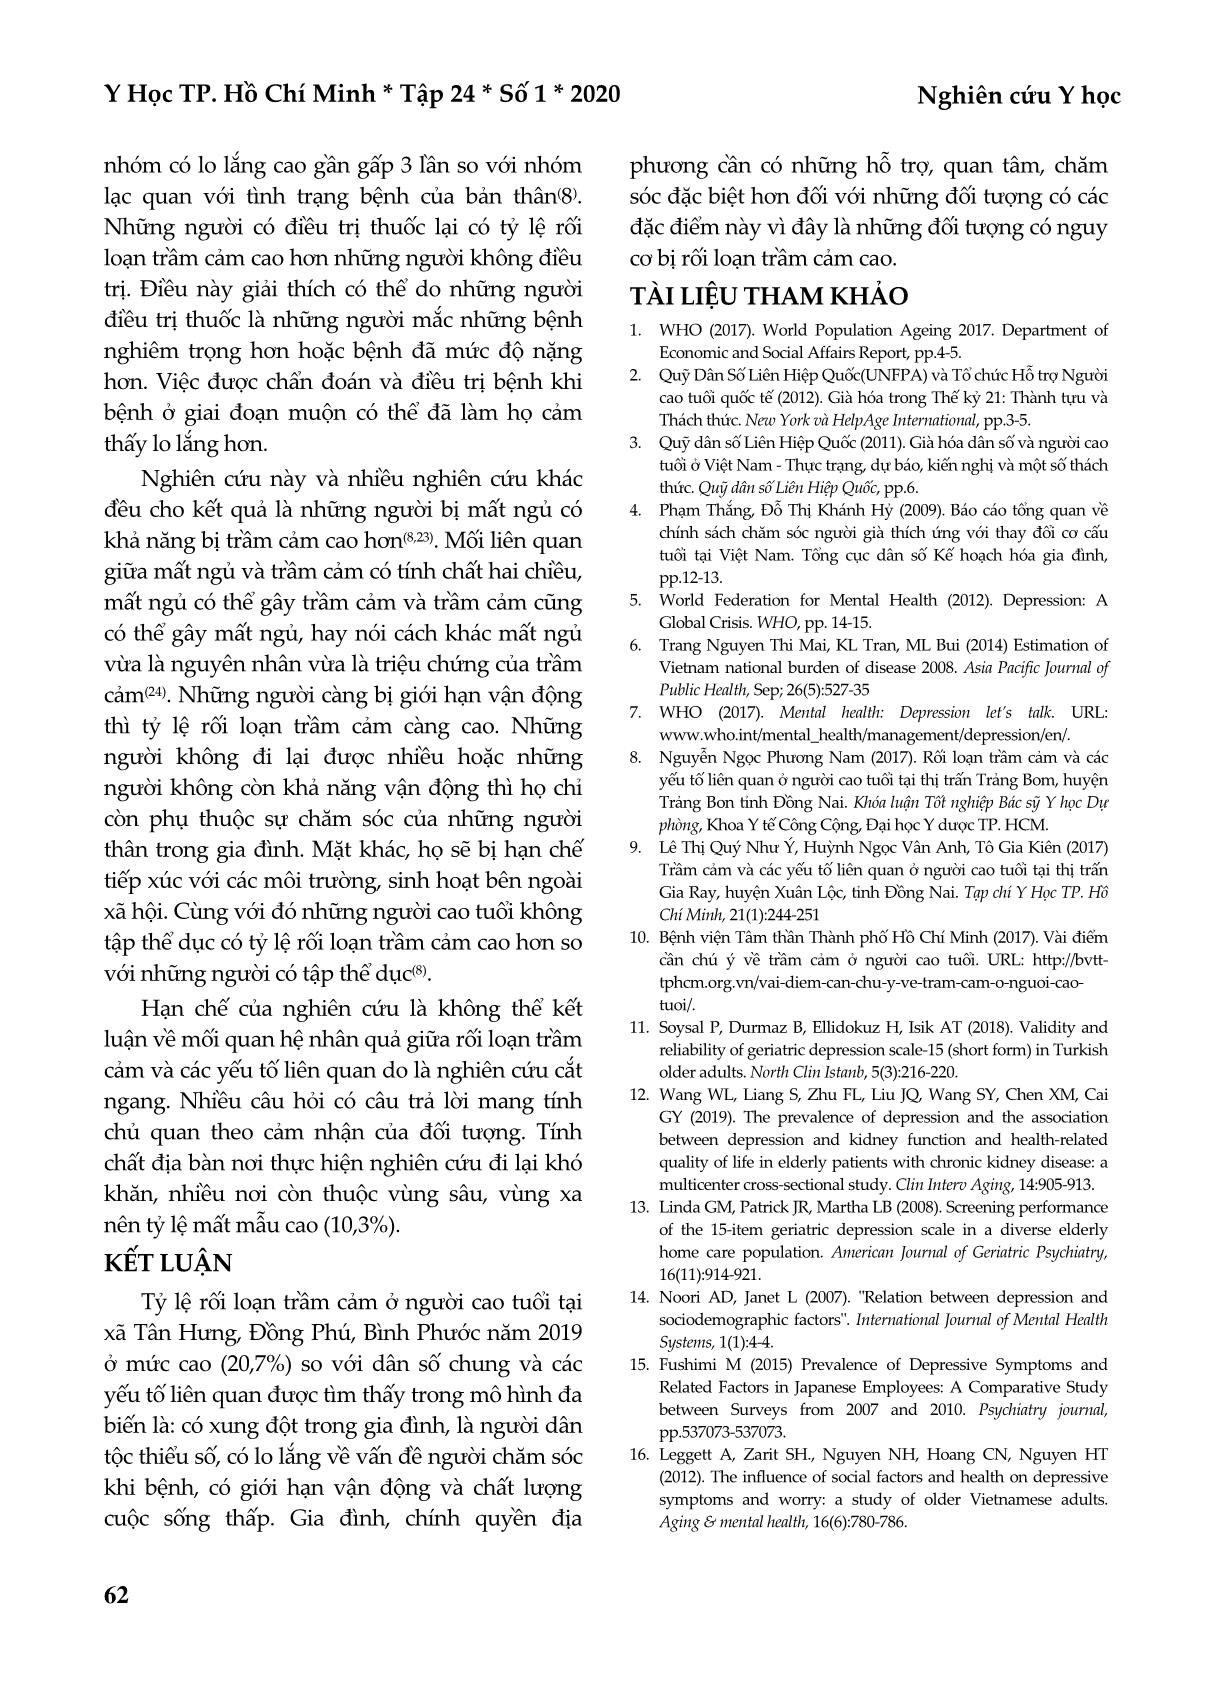 Rối loạn trầm cảm và các yếu tố liên quan ở người cao tuổi tại xã Tân Hưng, huyện Đồng Phú, tỉnh Bình Phước năm 2019 trang 8